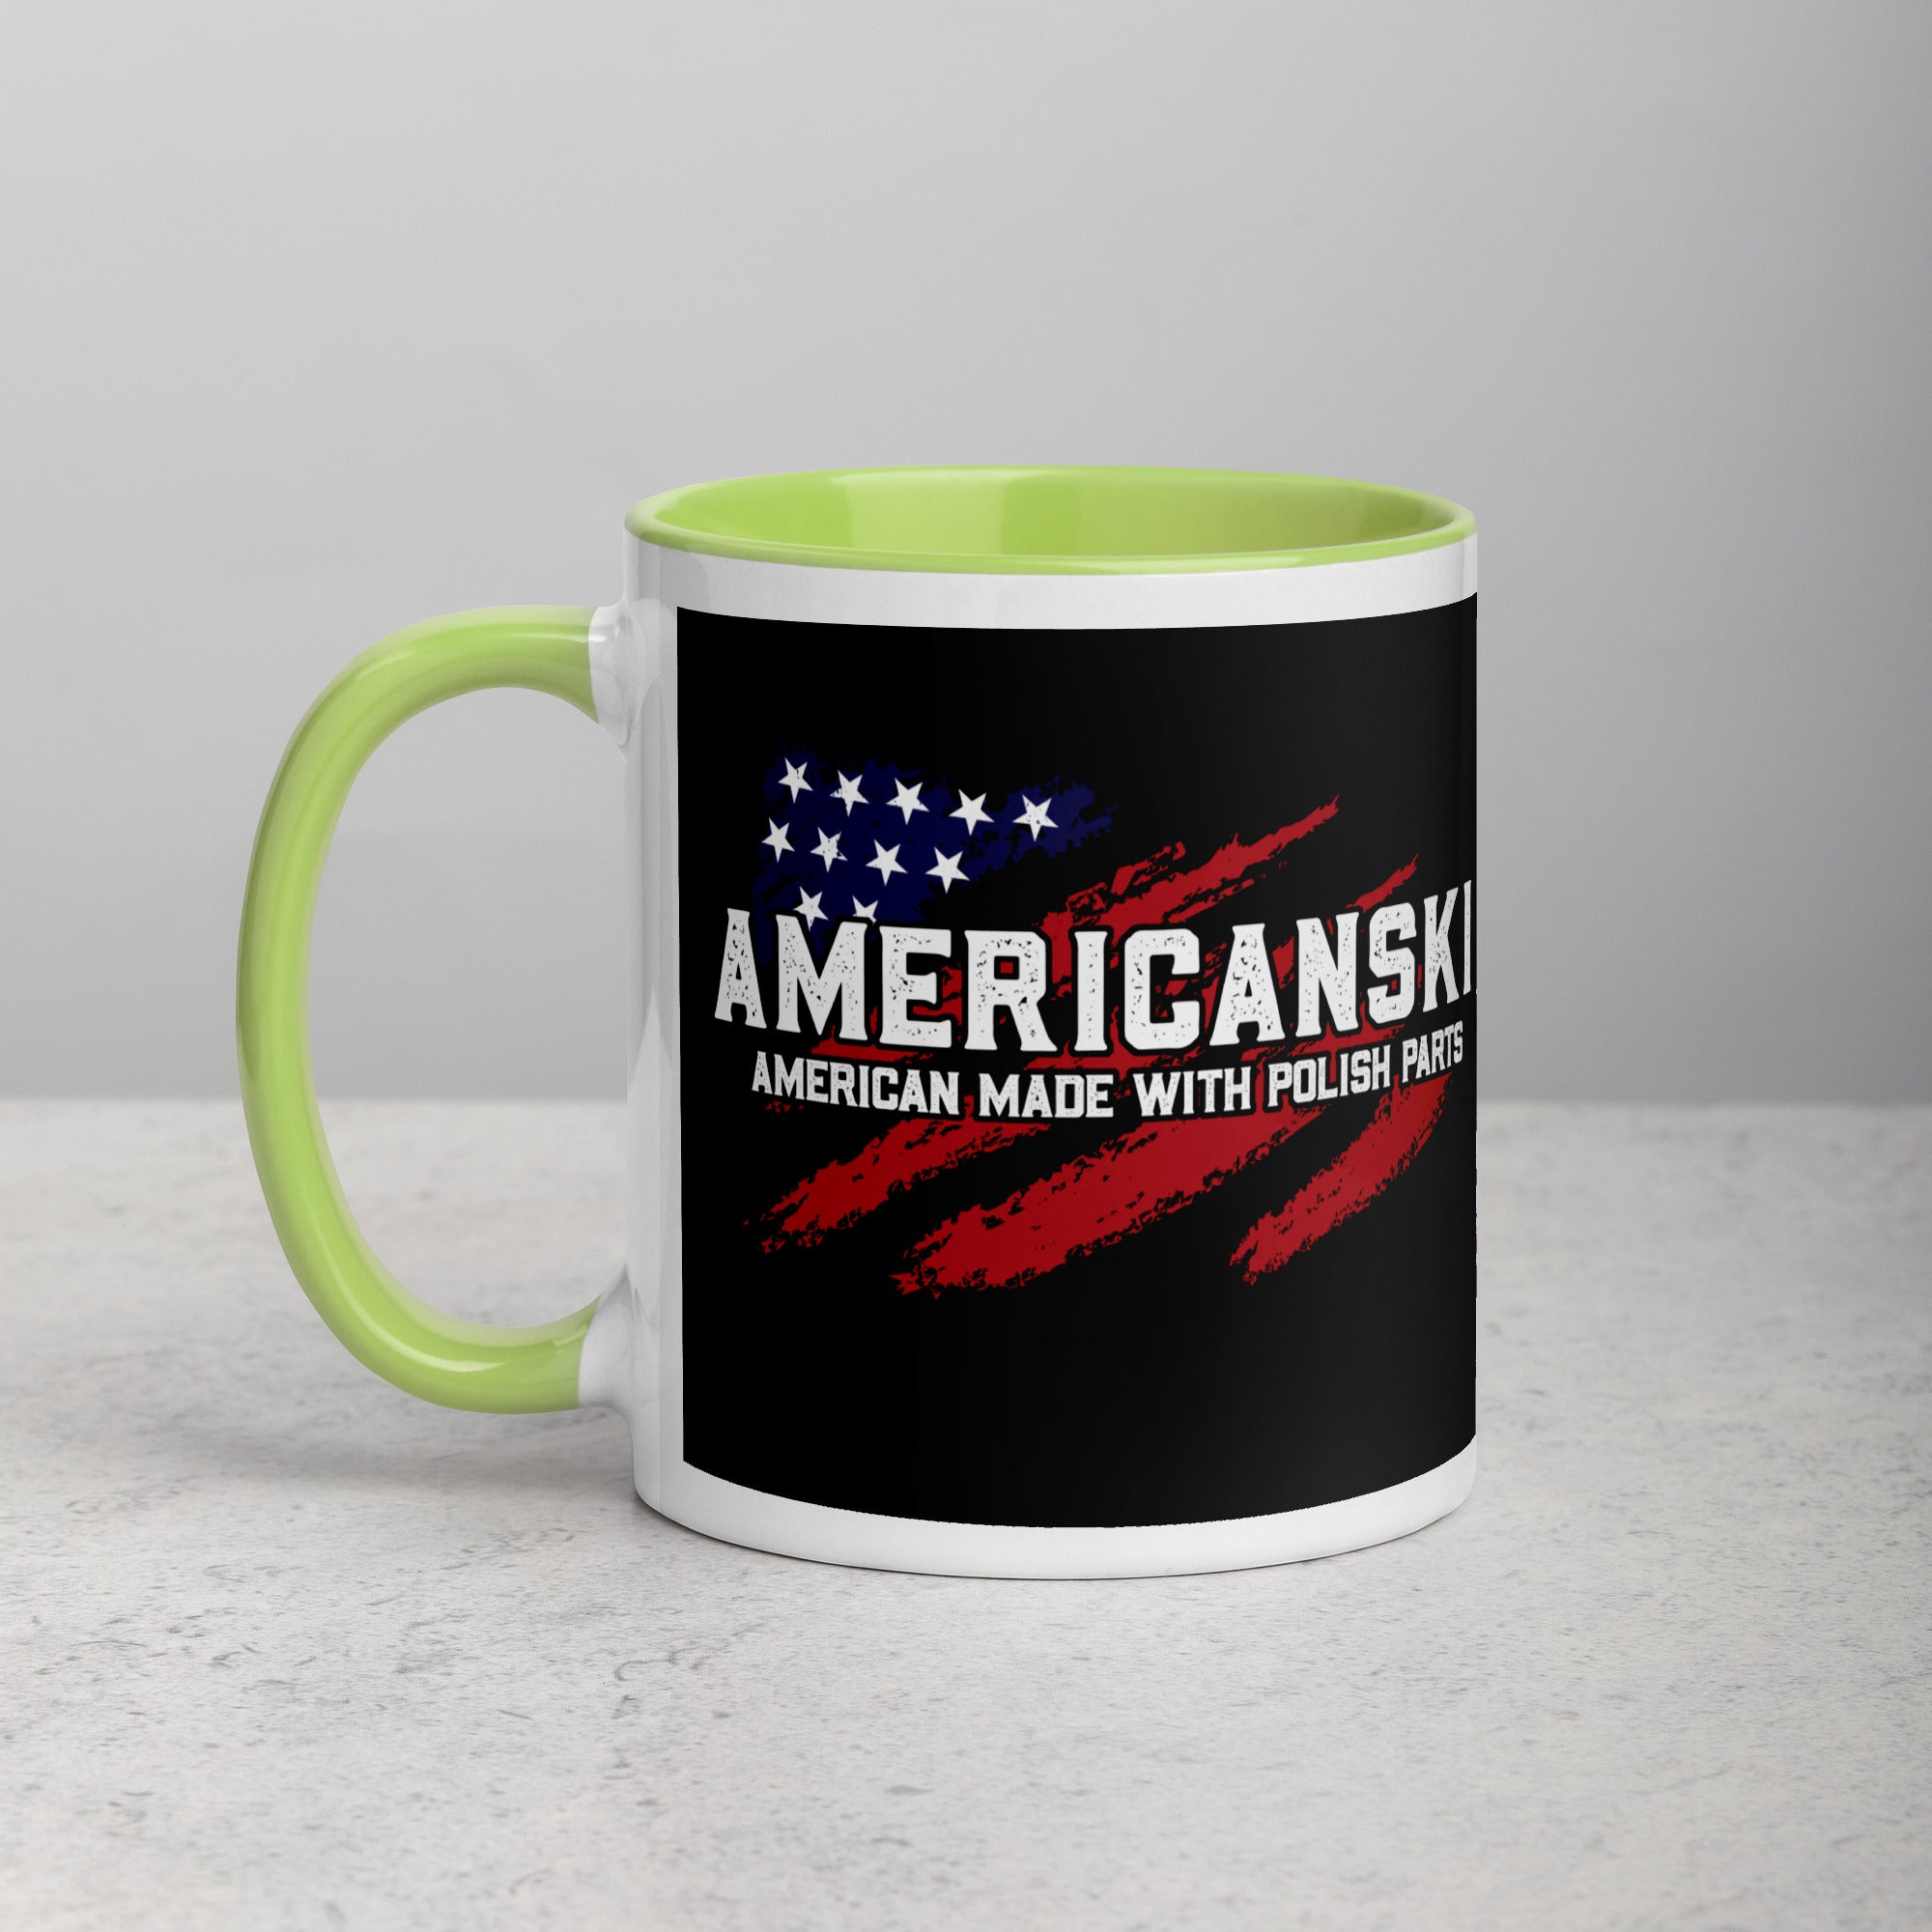 Americanski Coffee Mug with Color Inside  Polish Shirt Store Green 11 oz 